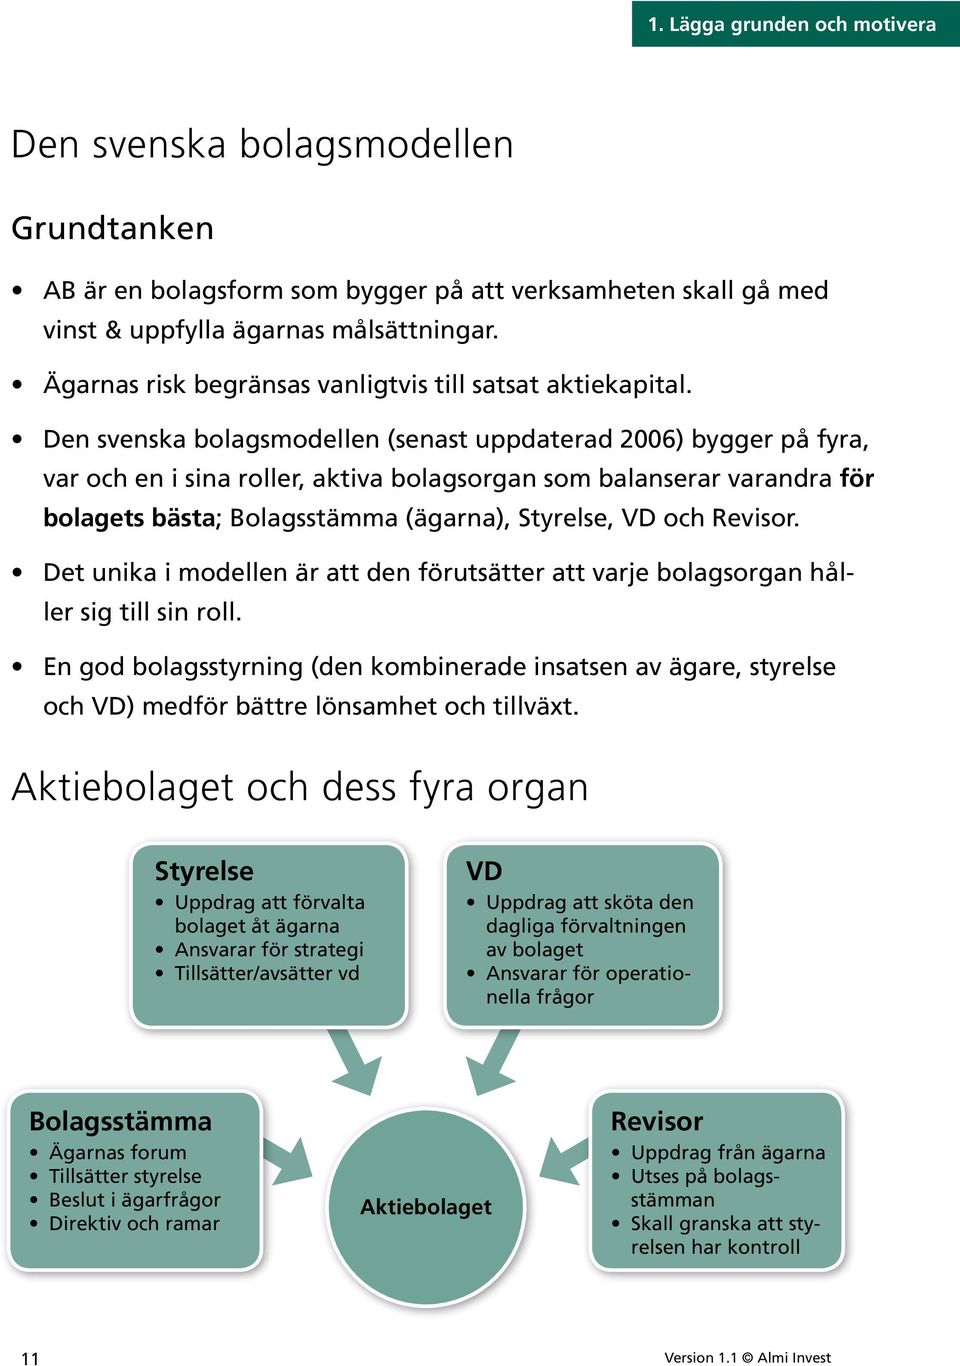 Den svenska bolagsmodellen (senast uppdaterad 2006) bygger på fyra, var och en i sina roller, aktiva bolagsorgan som balanserar varandra för bolagets bästa; Bolagsstämma (ägarna), Styrelse, VD och